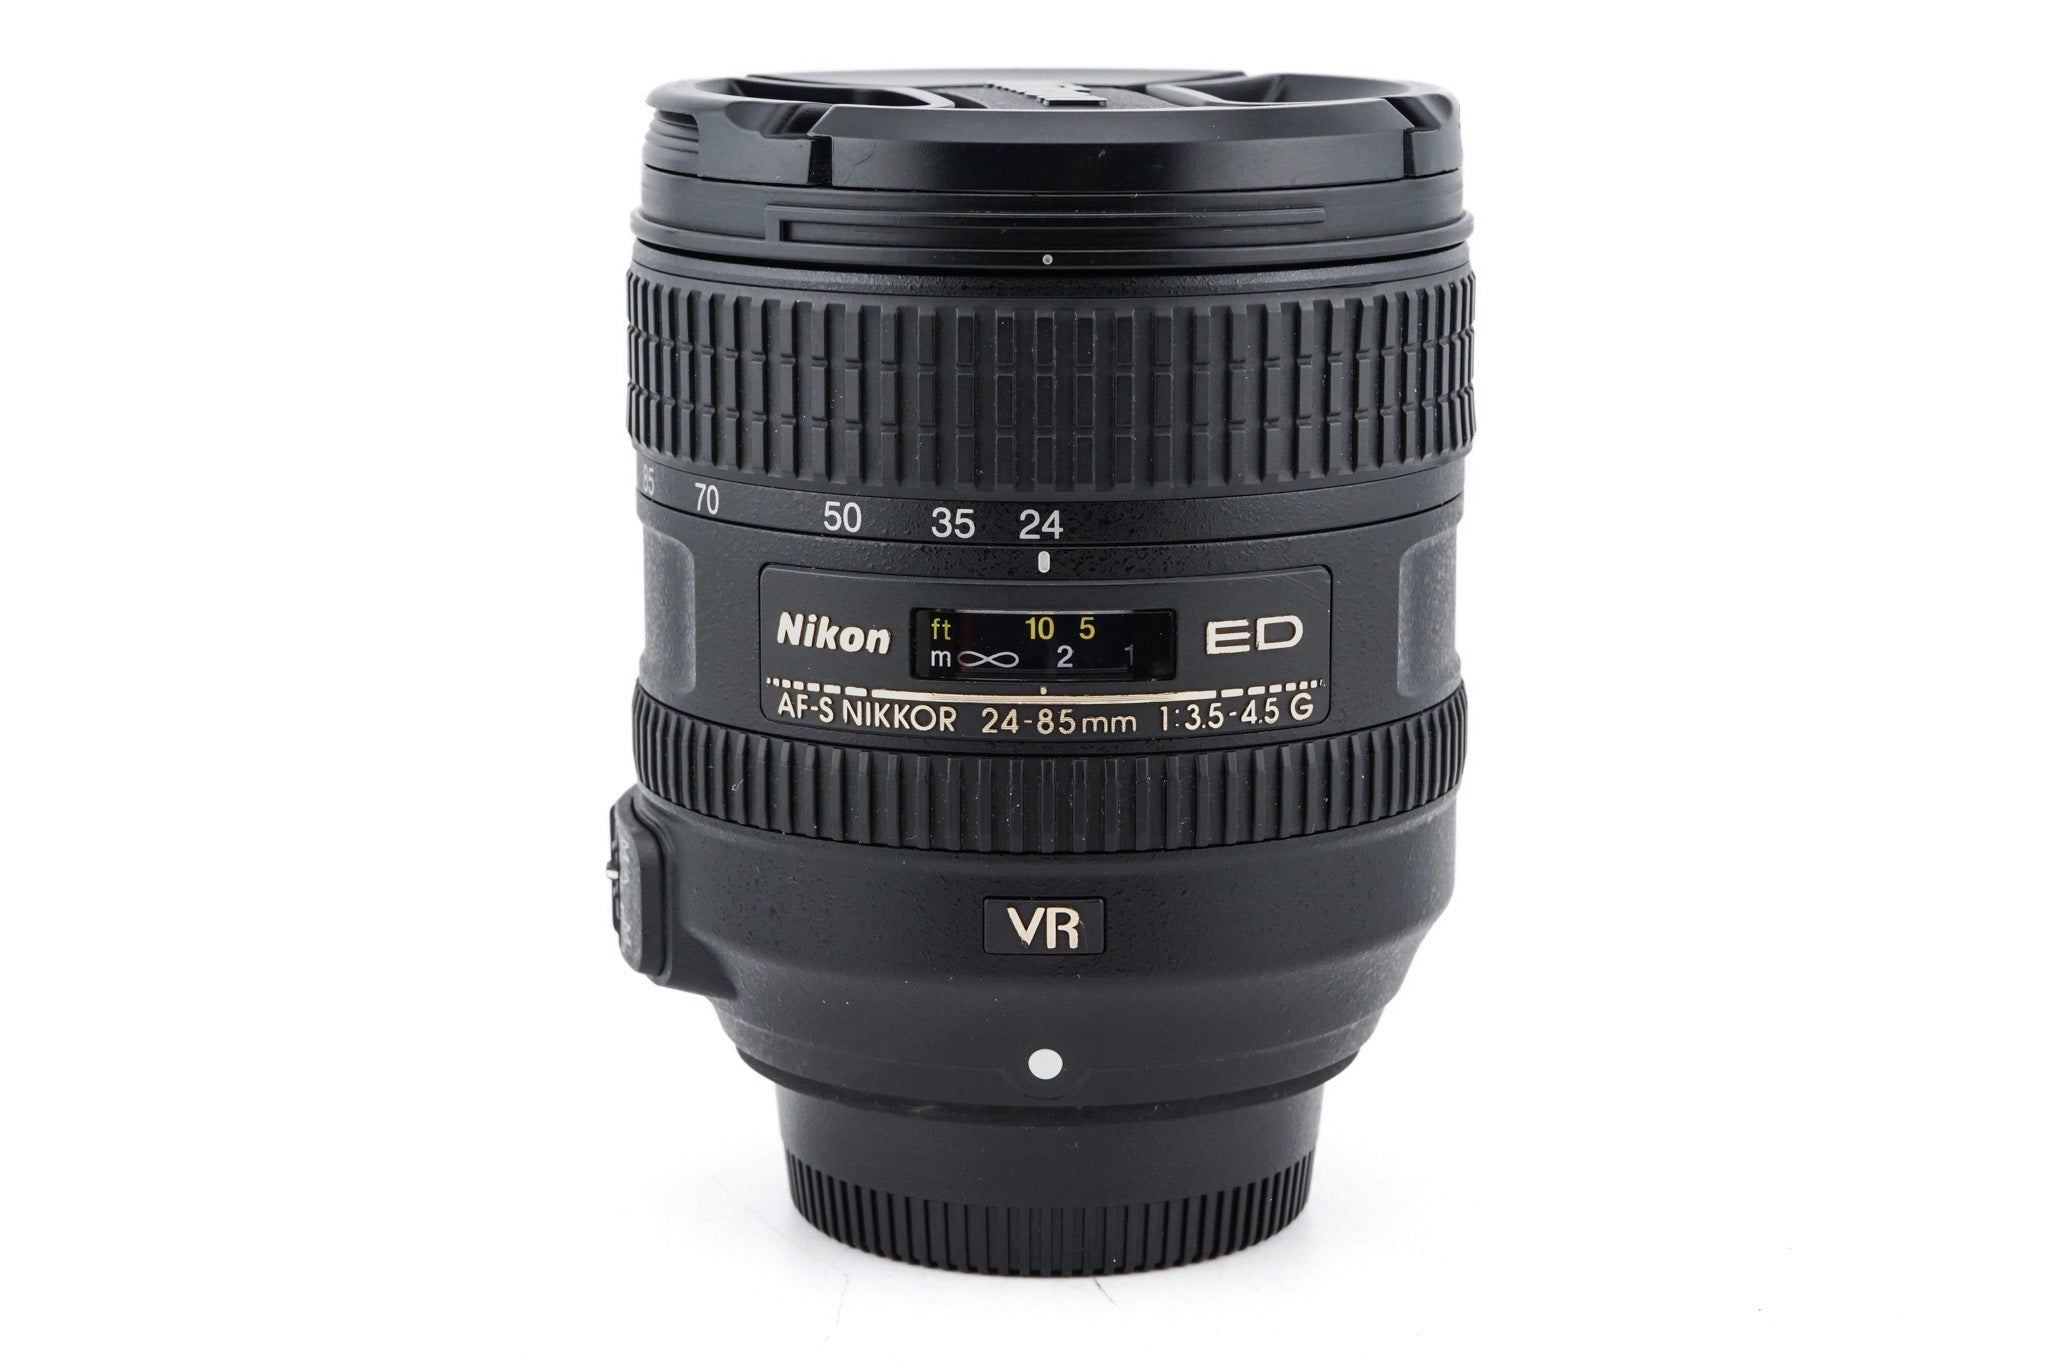 Nikon 24-85mm f3.5-4.5 G ED VR AF-S Nikkor